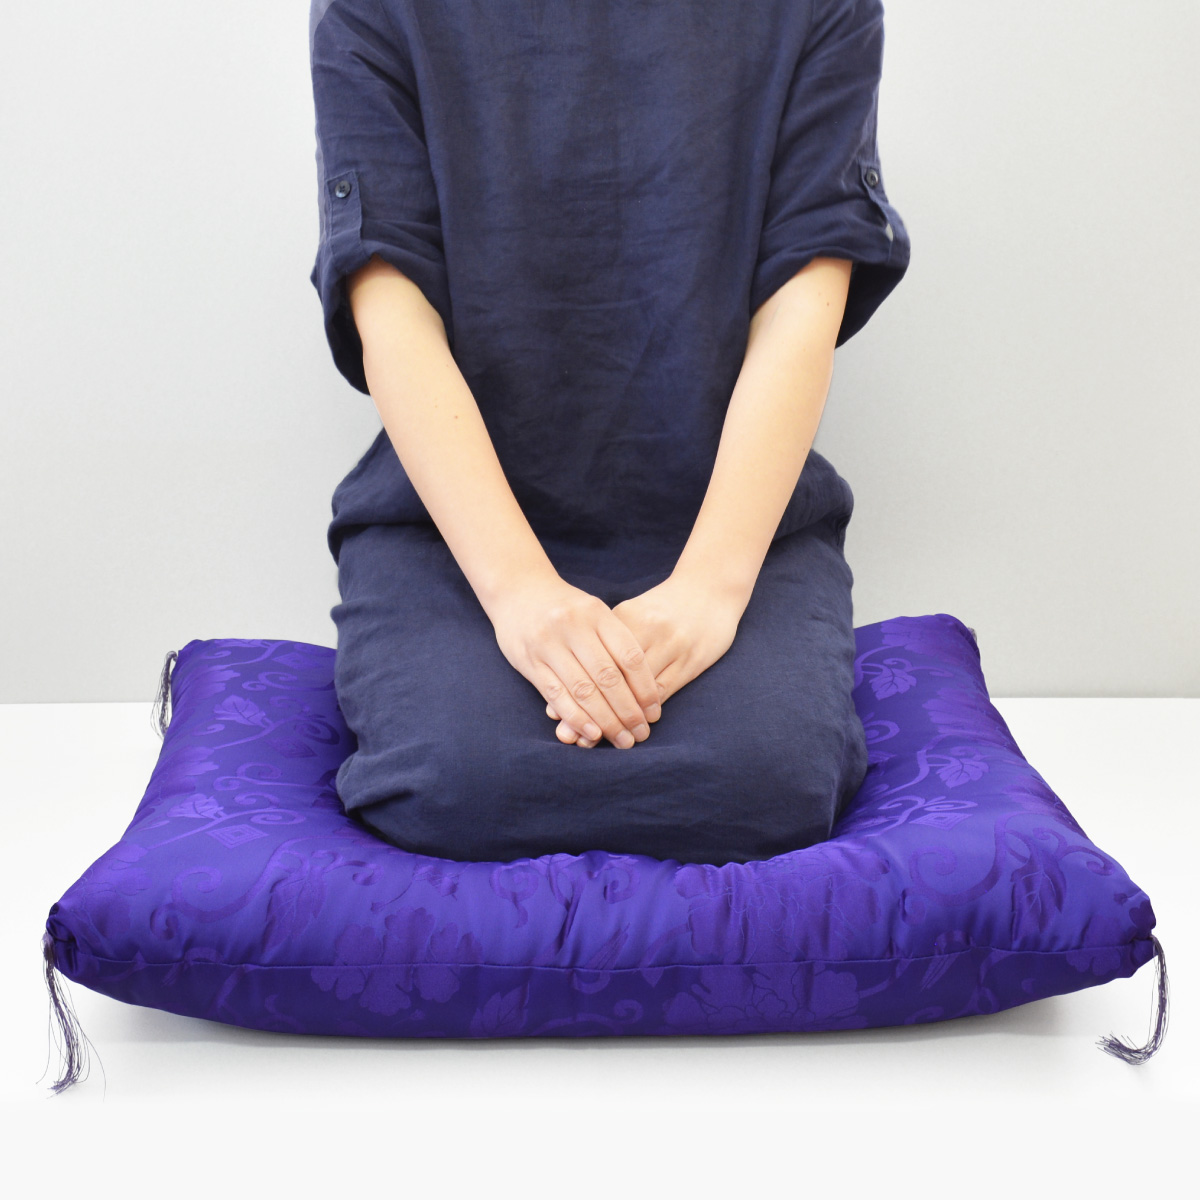 古希 喜寿 卒寿 プレゼント 紫色の座布団 着座イメージ